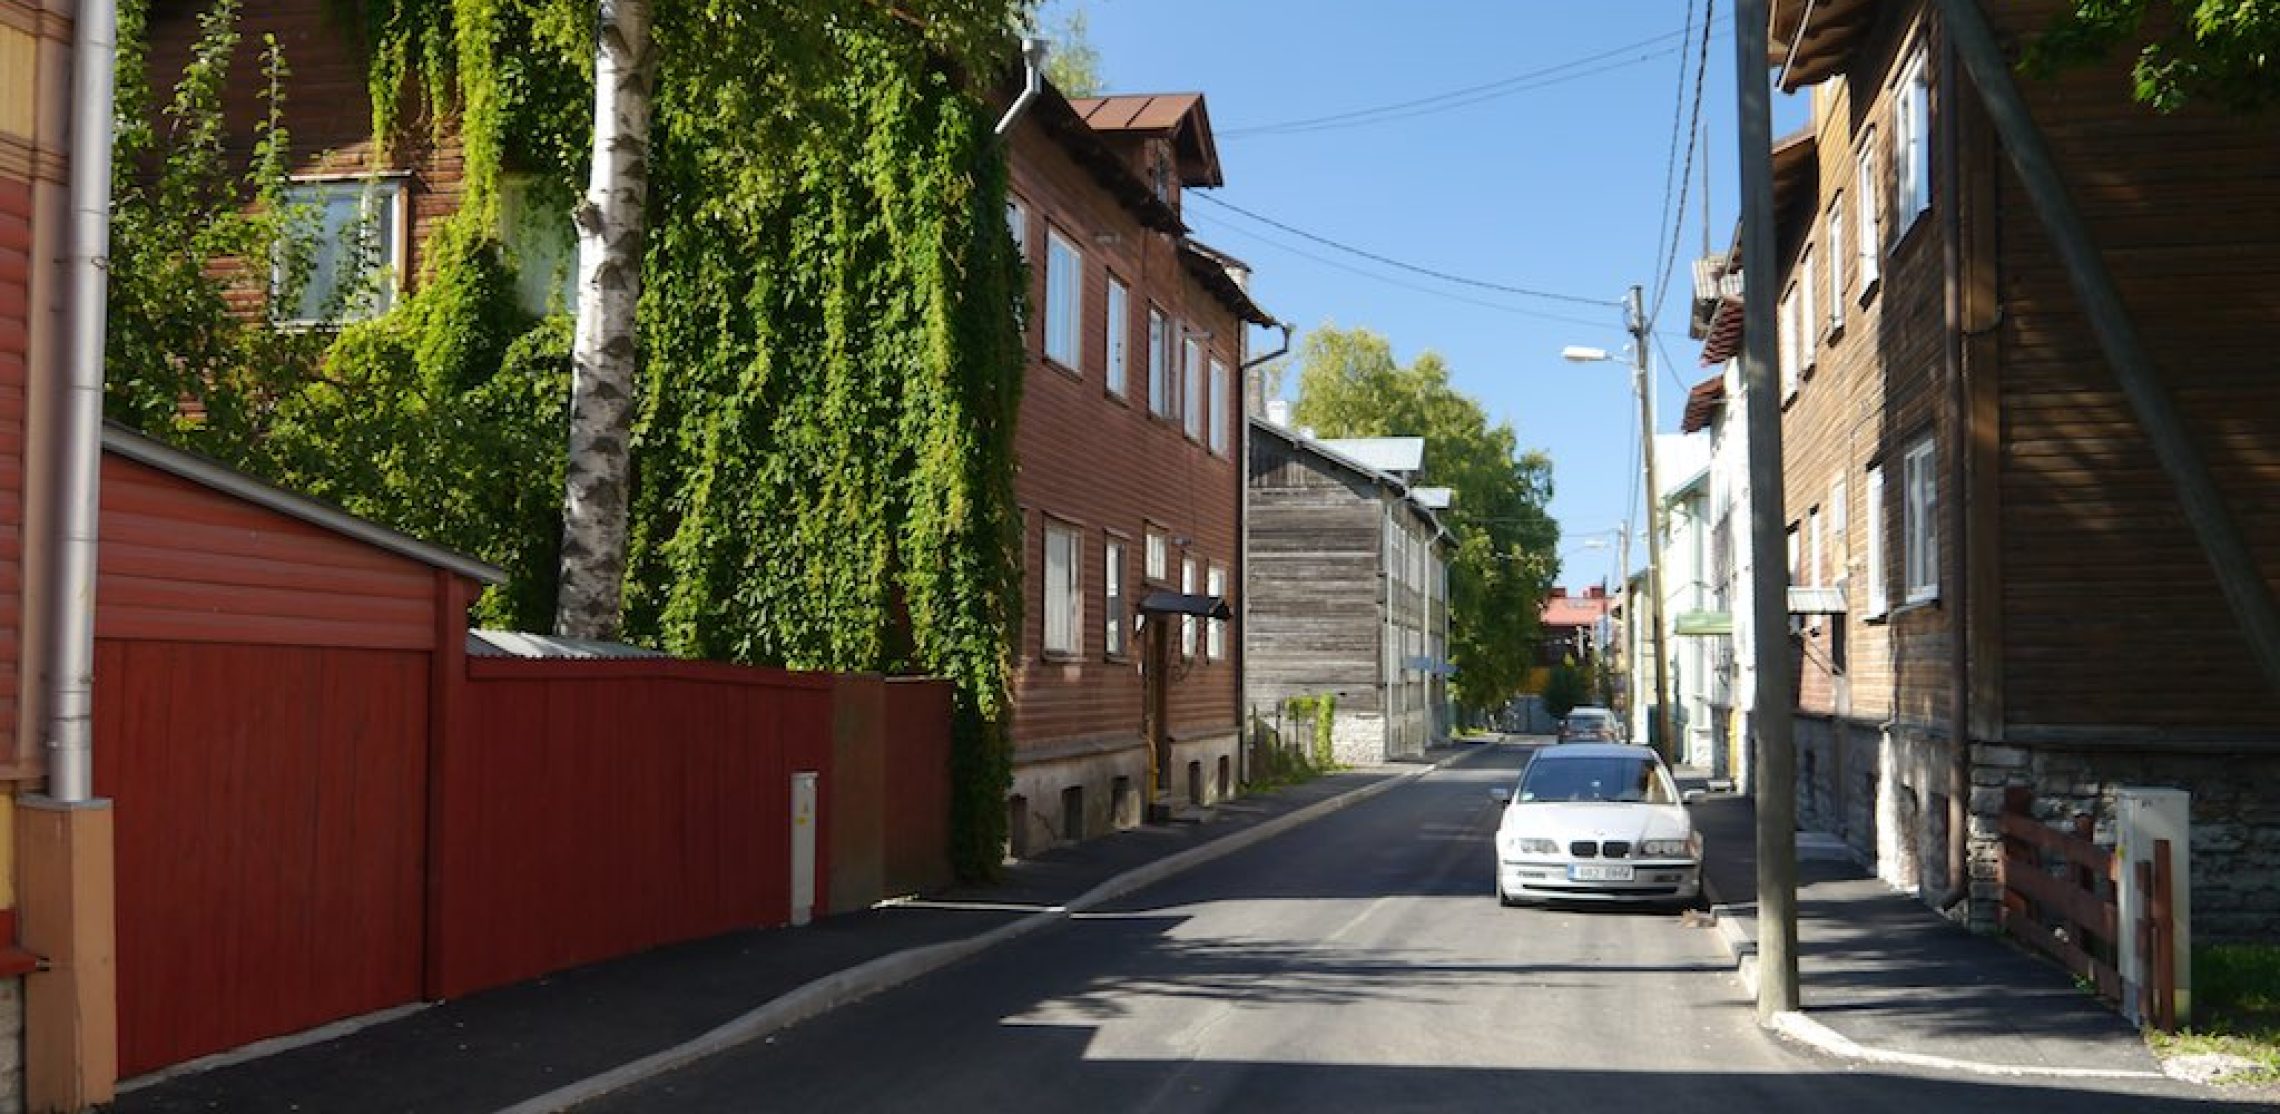 Straße im Kalamaja Viertel von Tallinn